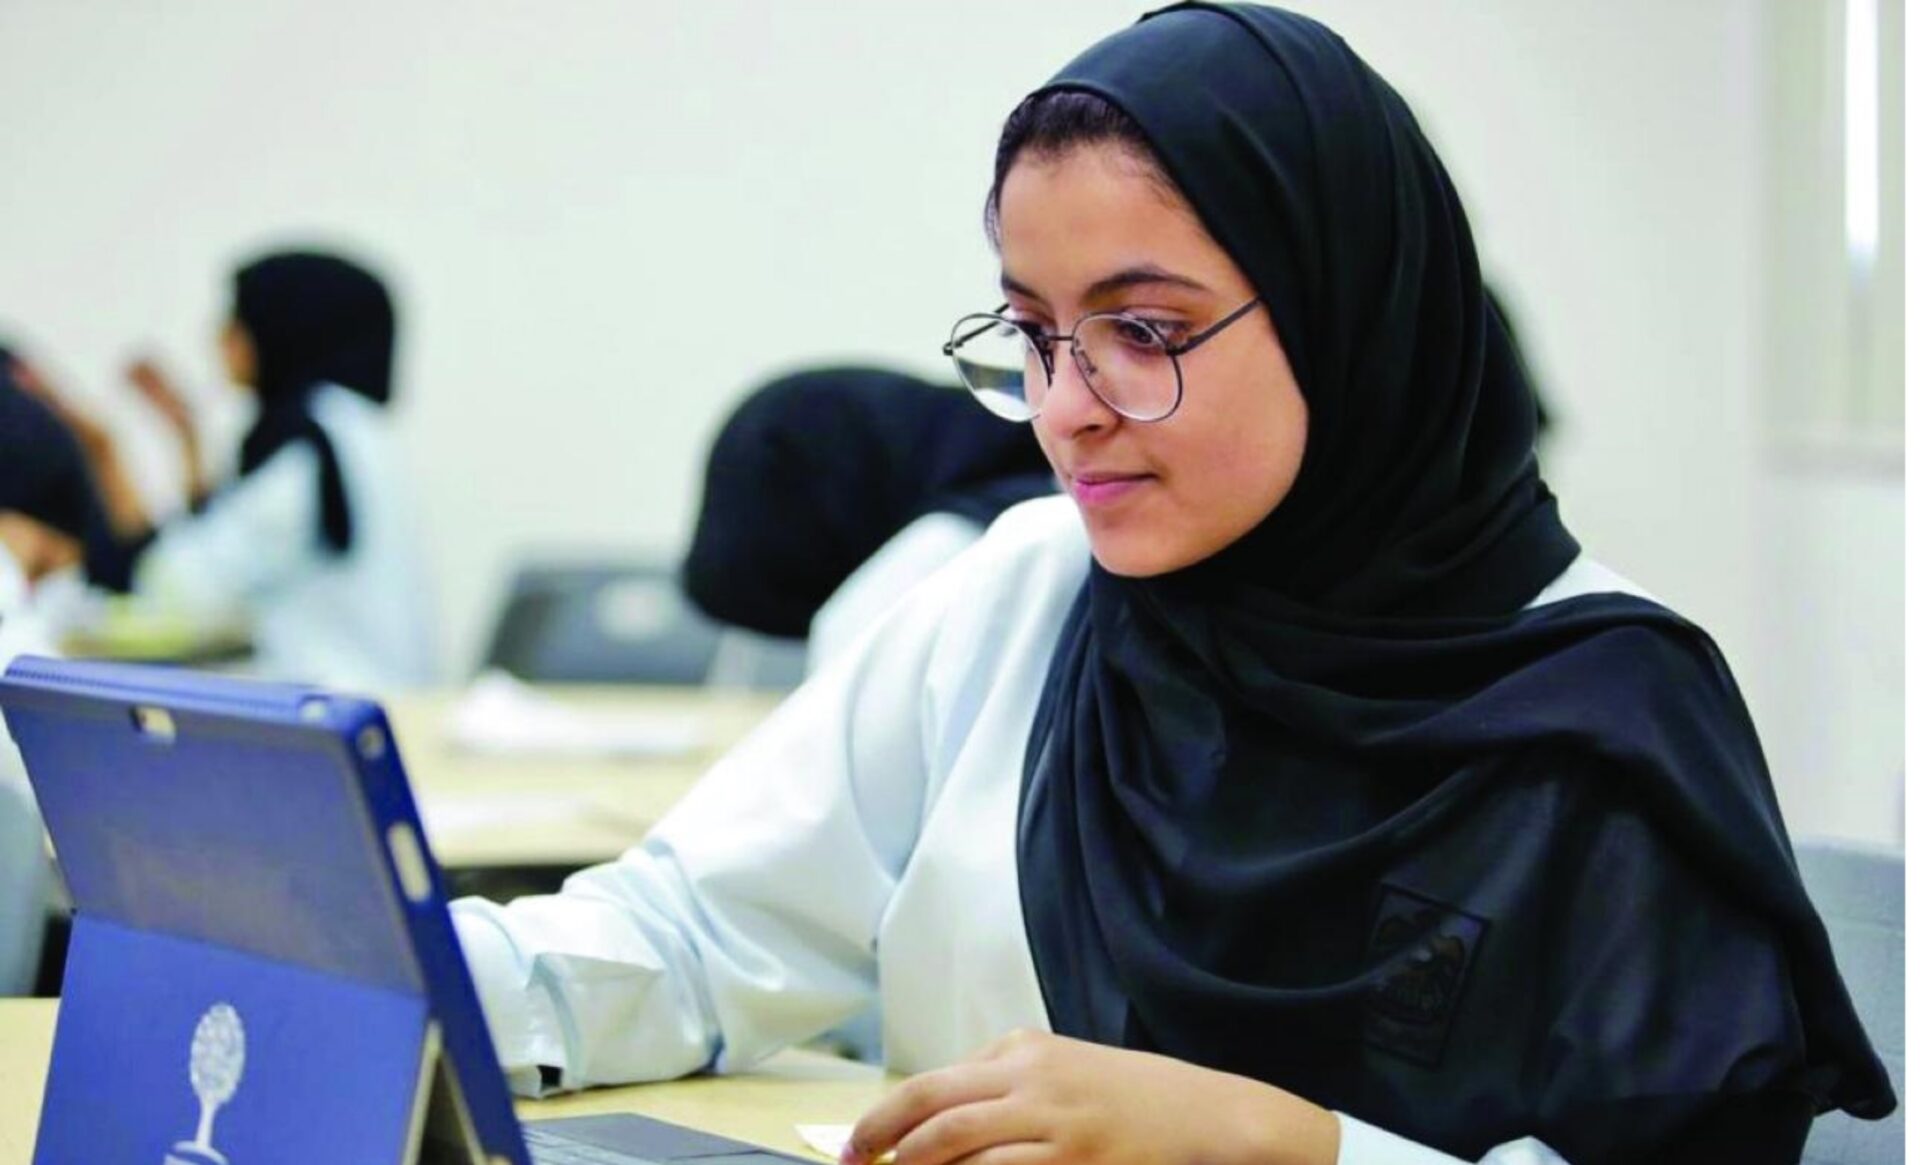 رابط نتائج الامتحانات في سلطنة عمان "HOmE.moe.gov.om" ..البوابة التعليمية 2023 